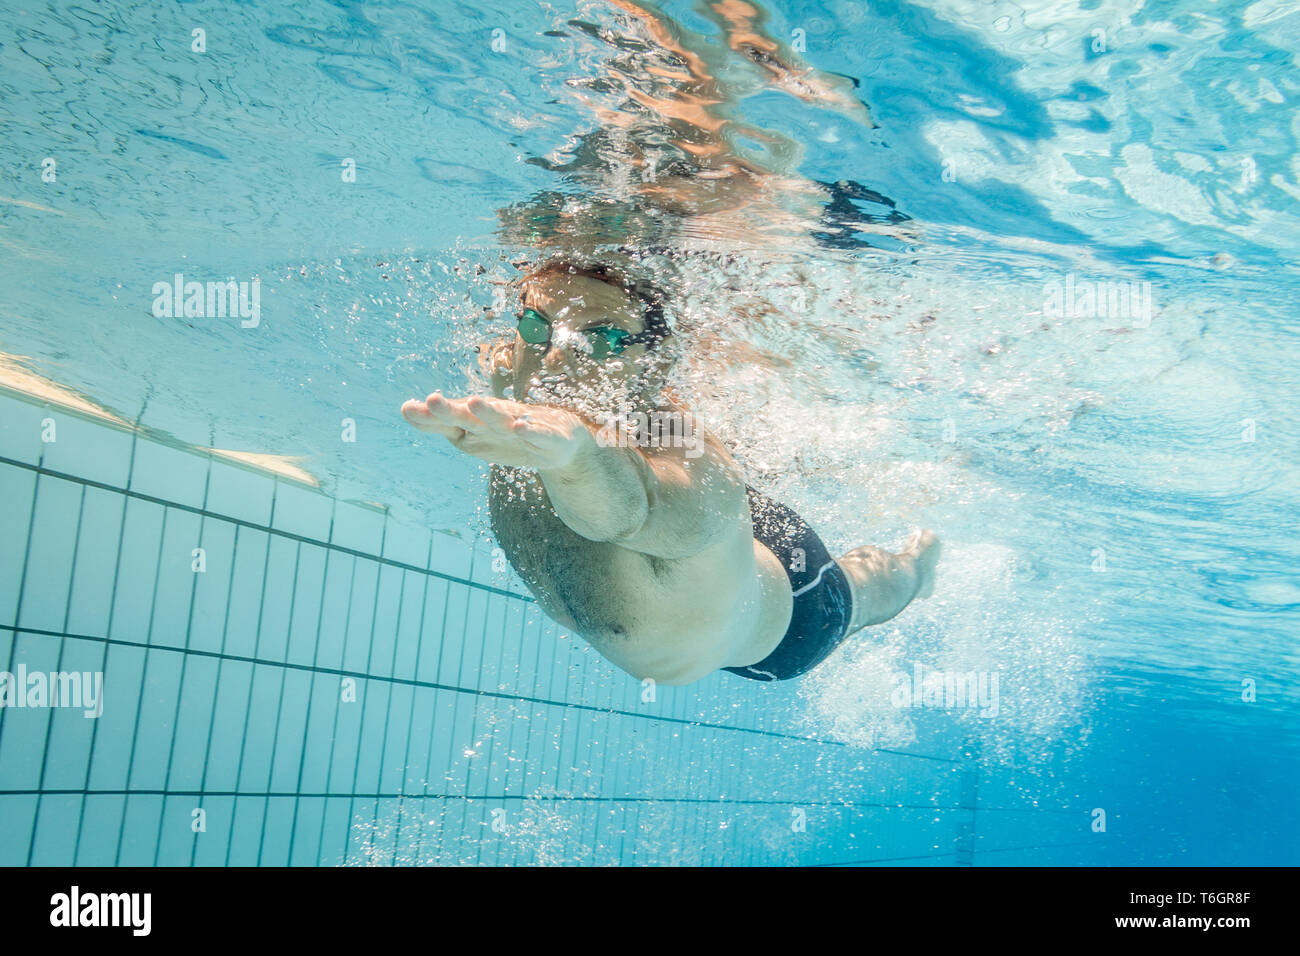 Nadador masculino en la piscina.Fotografía submarina con espacio de copia. Foto de stock